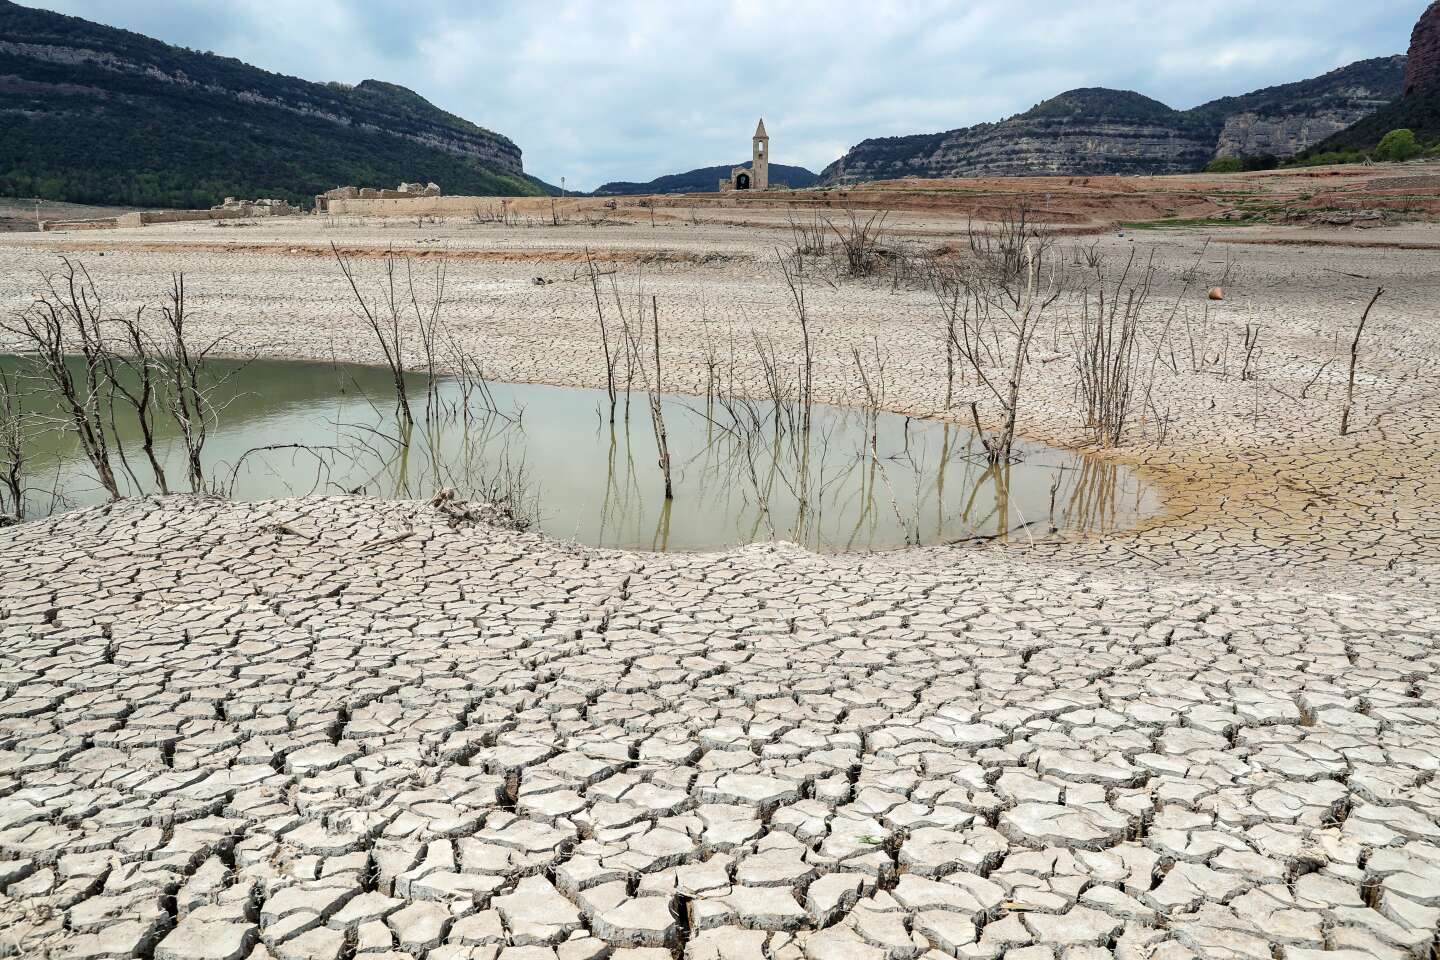 Confrontée à une sécheresse historique, la Catalogne se prépare à d’importantes restrictions d’eau